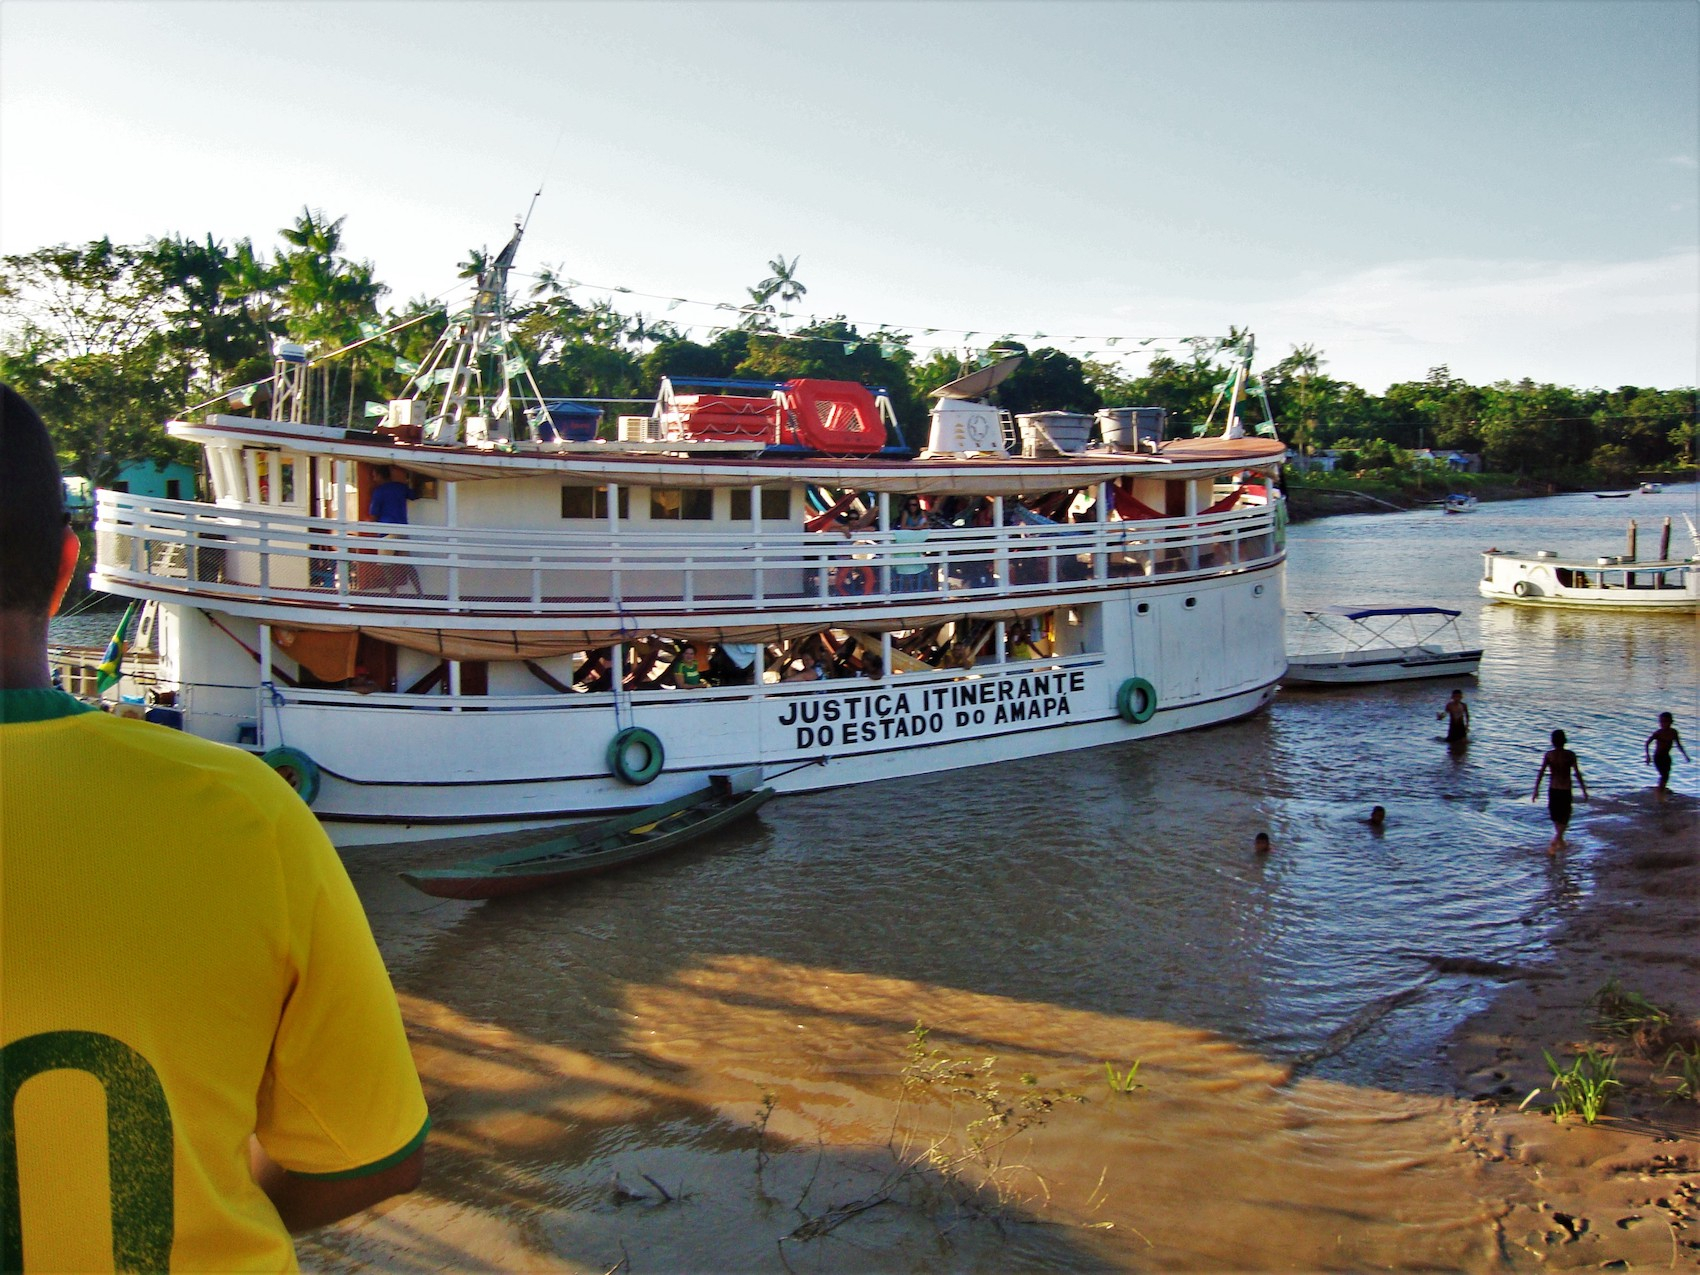 Le bateau-tribunal de l'Amapa, arrimé près d'un village riverain de l'Amazone.
©Lauriane Dos Santos